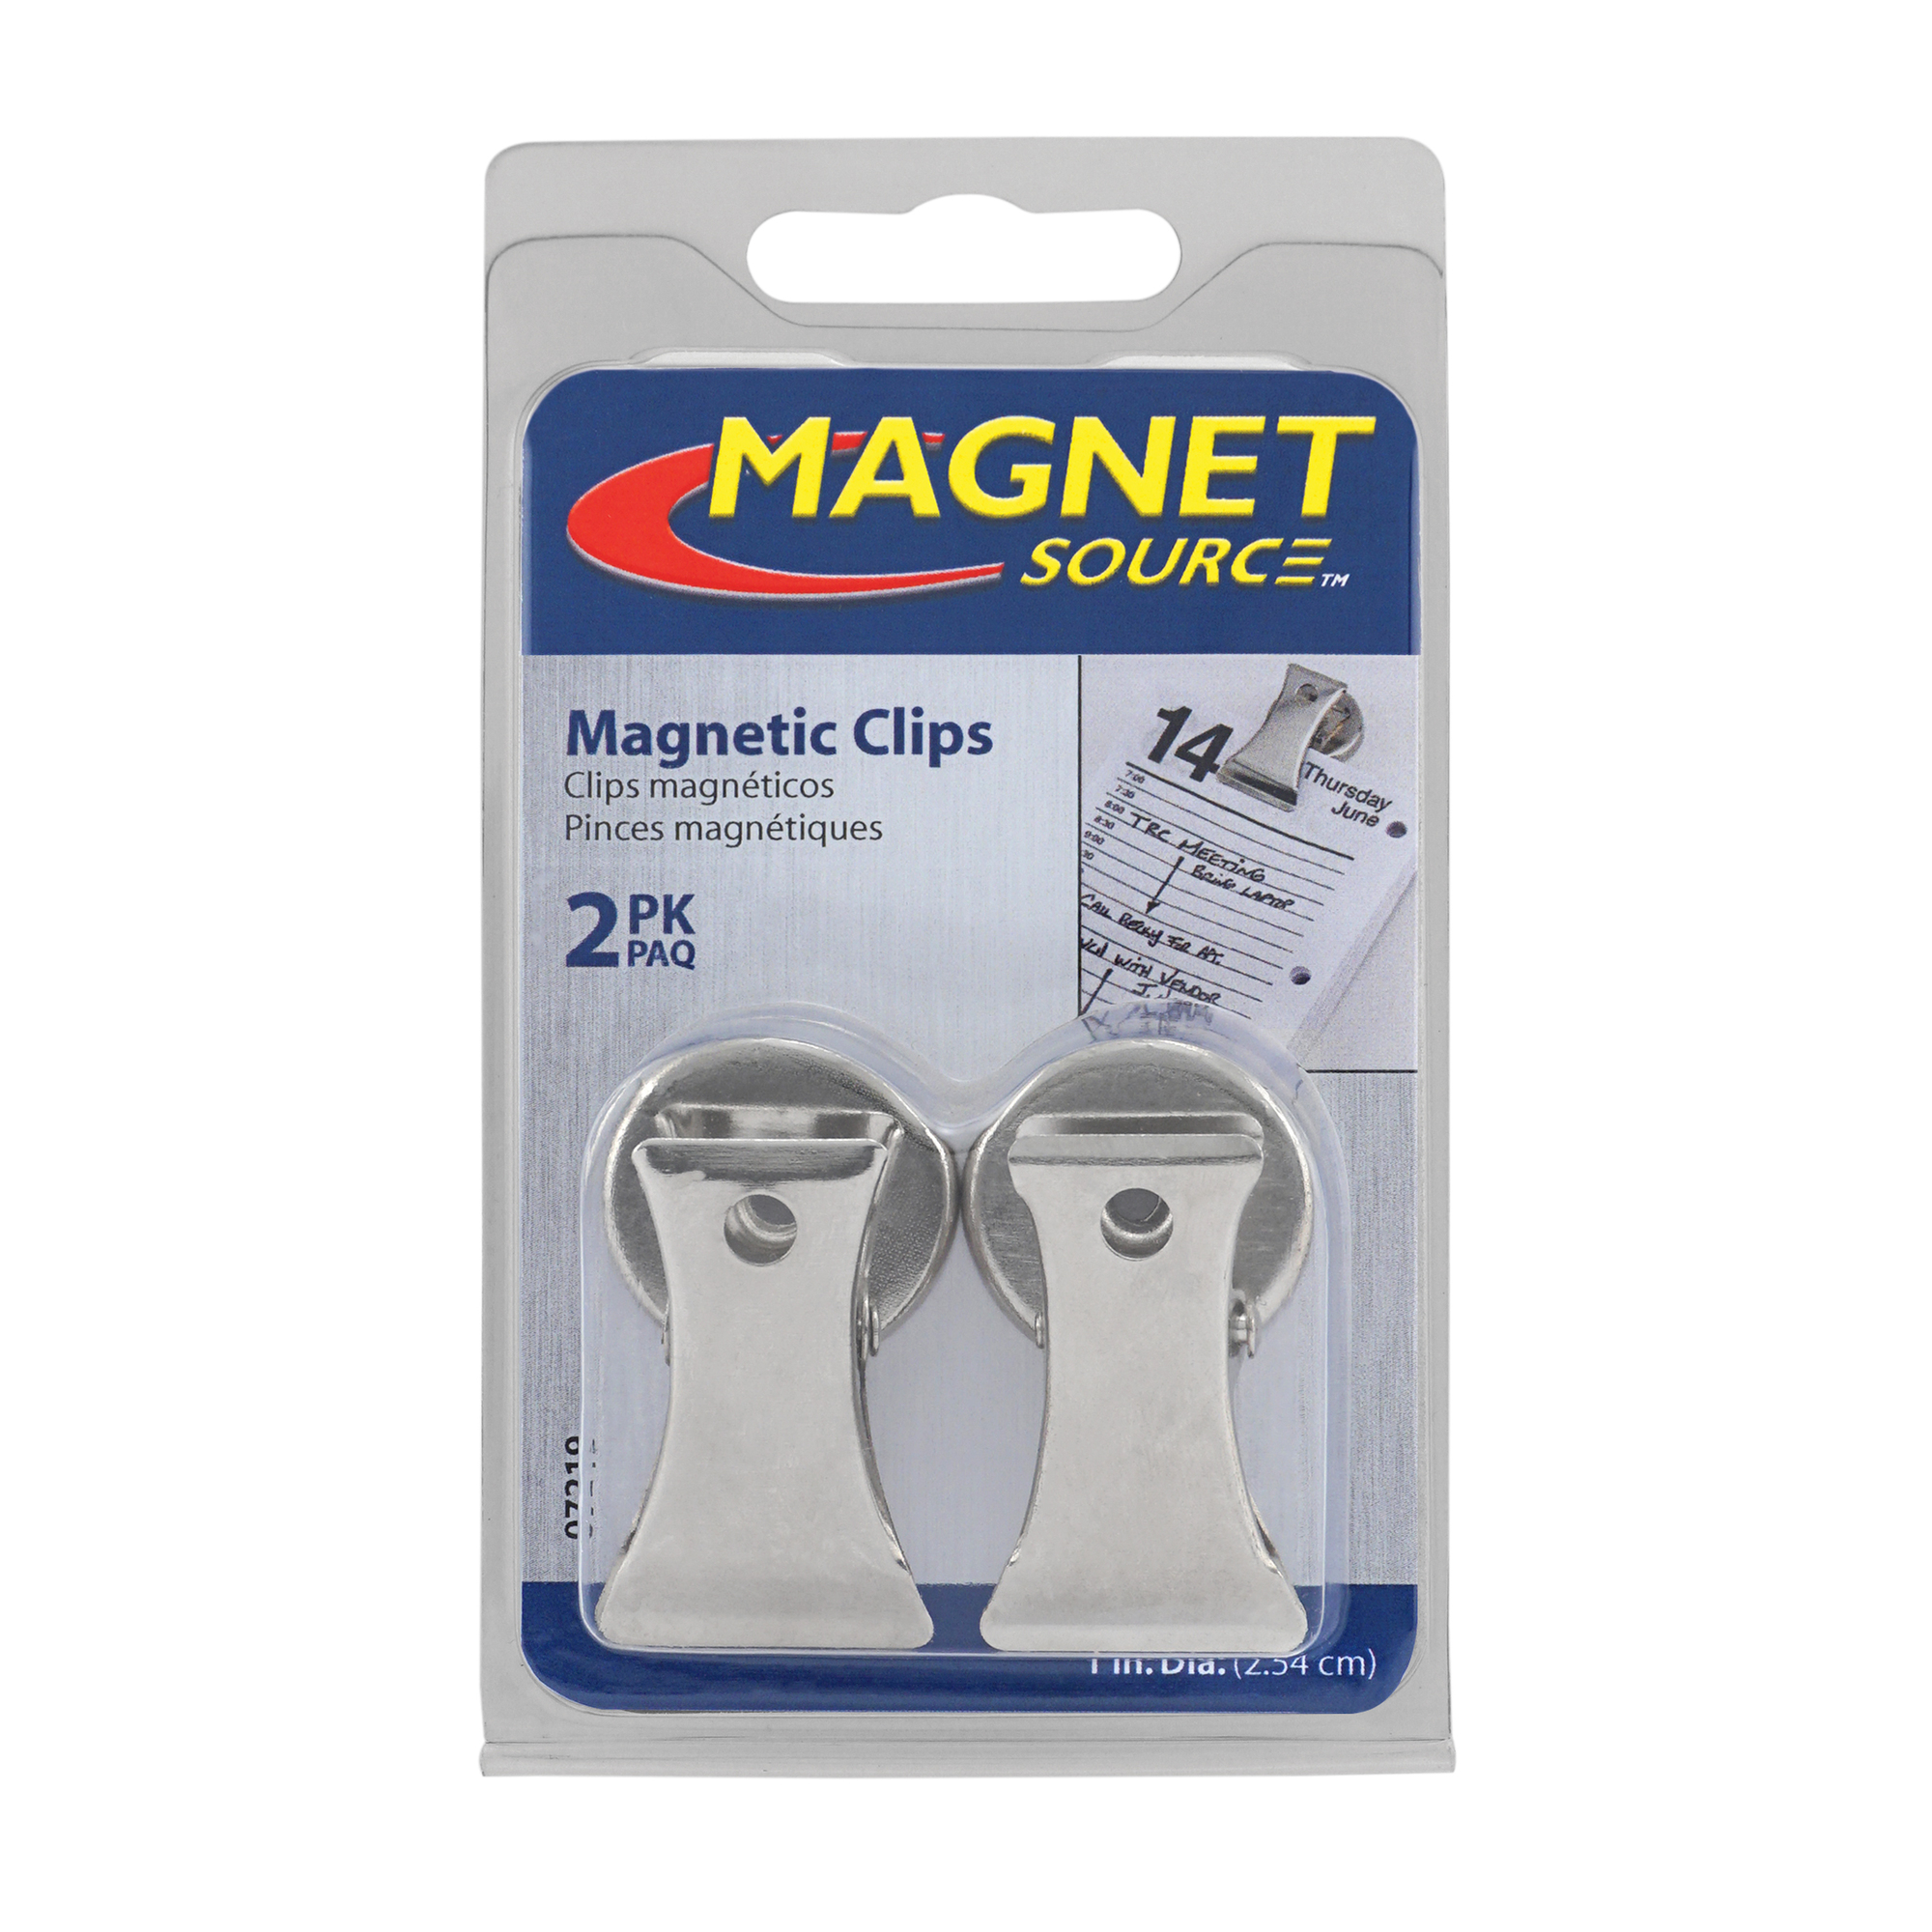 Handy Clip Magnets, 2-Pc. Set